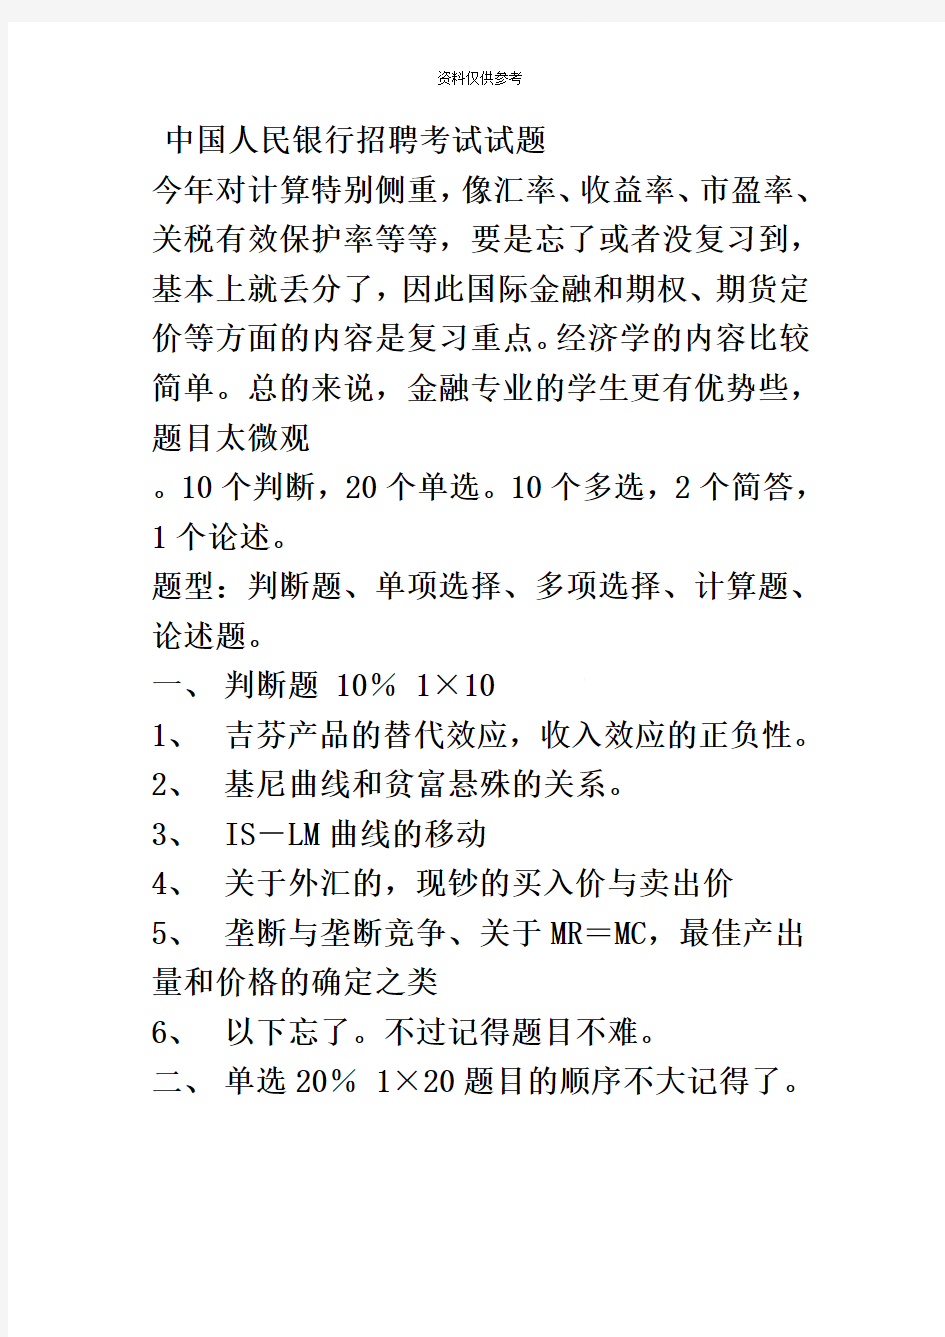 中国人民银行经济金融类招聘考试试题